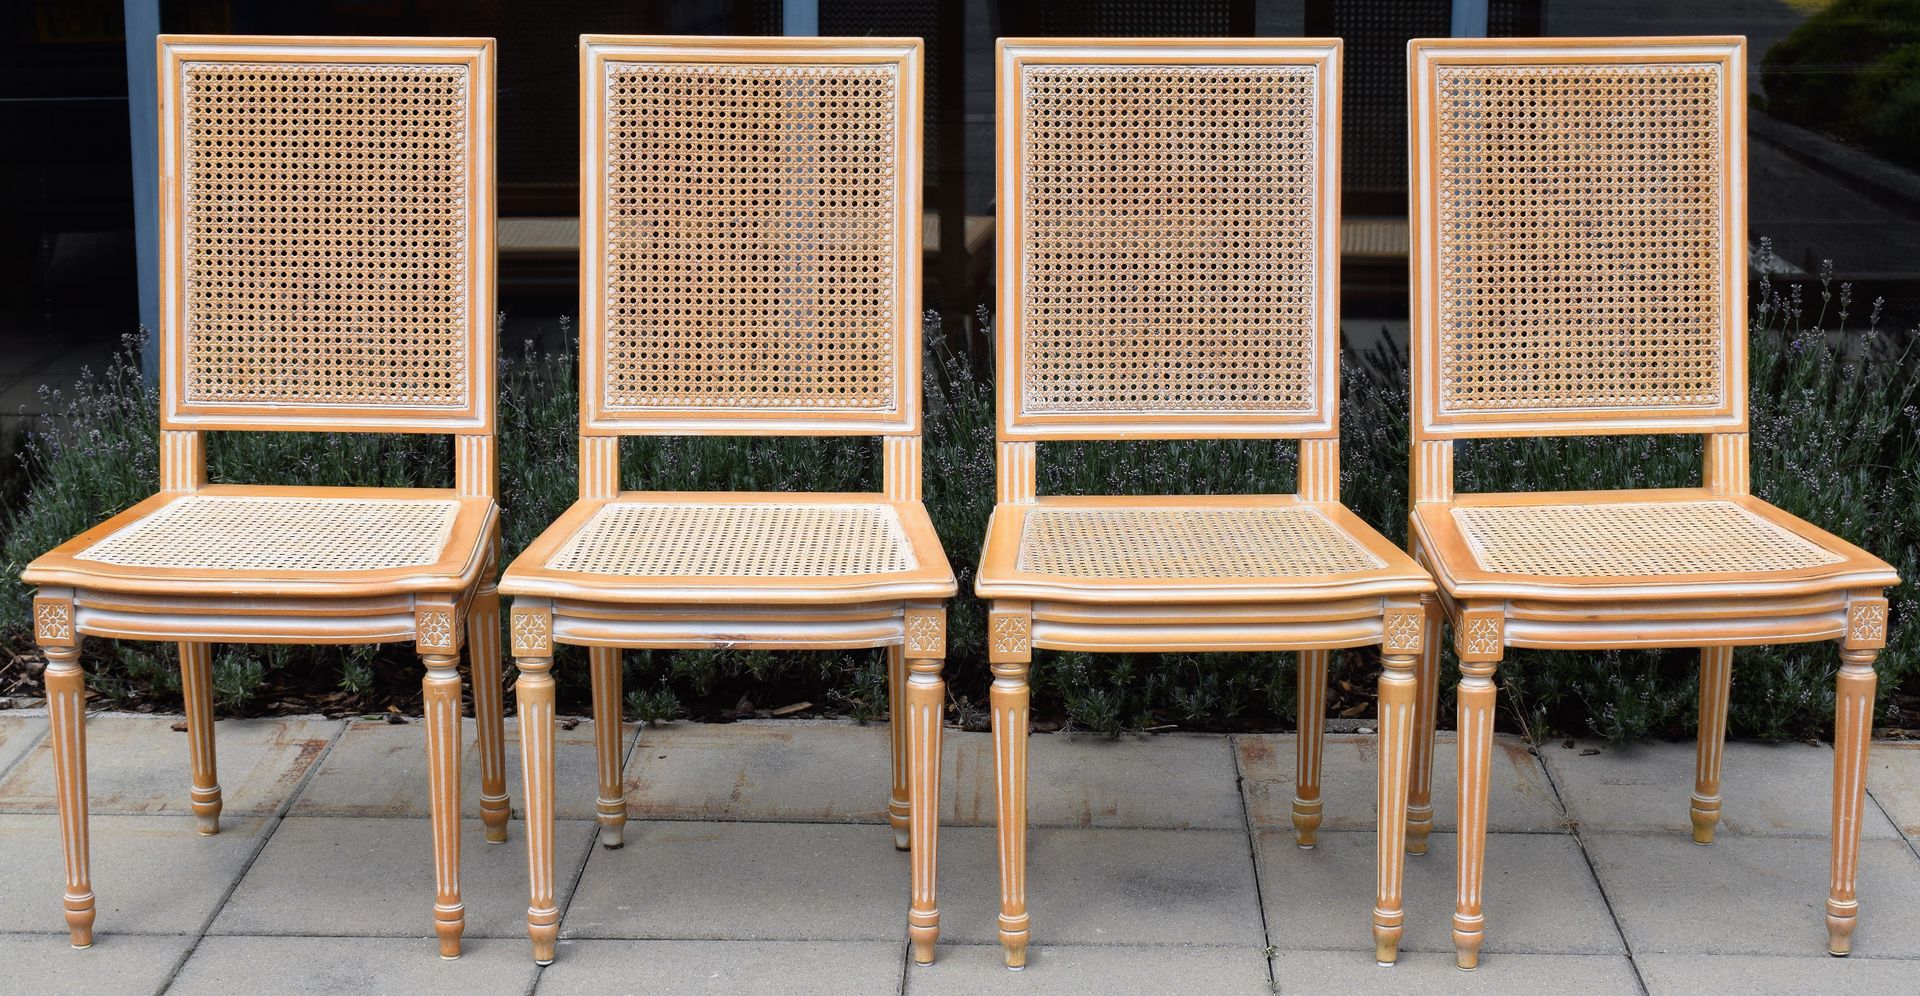 Null (MOBILIARIO) 4 sillas de madera, de caña y cerusa blanca, estilo Luis XVI

&hellip;